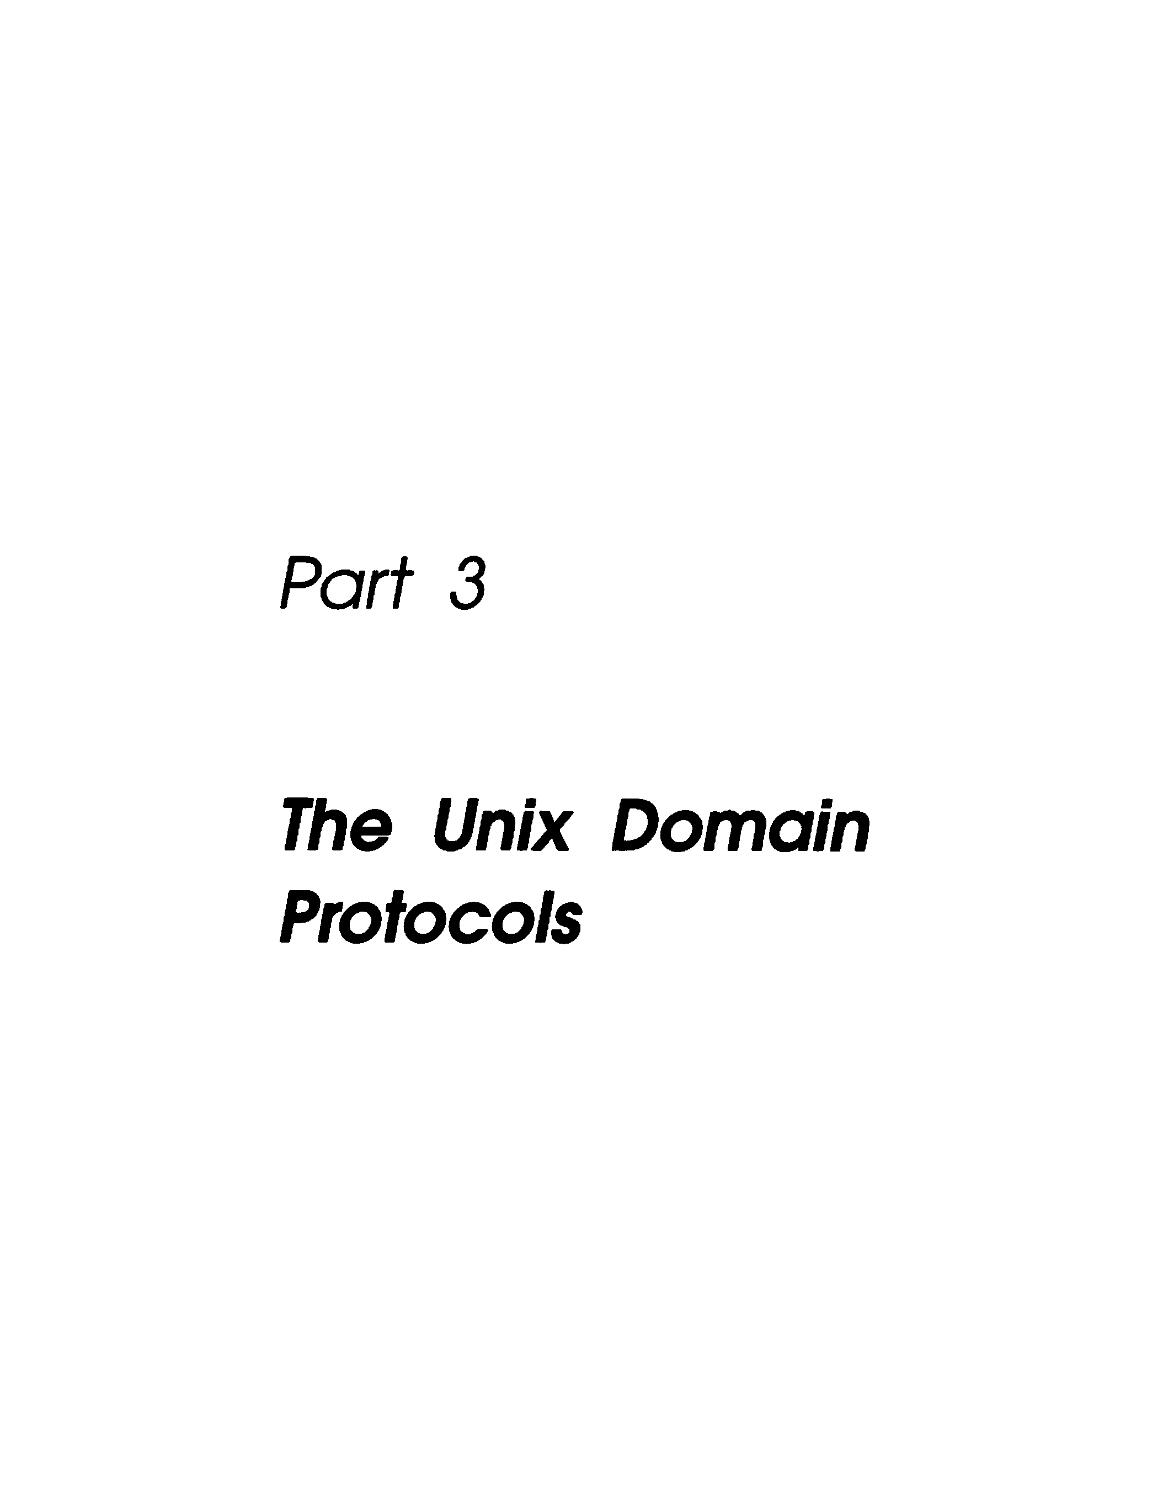 Part 3. The Unix Domain Protocols